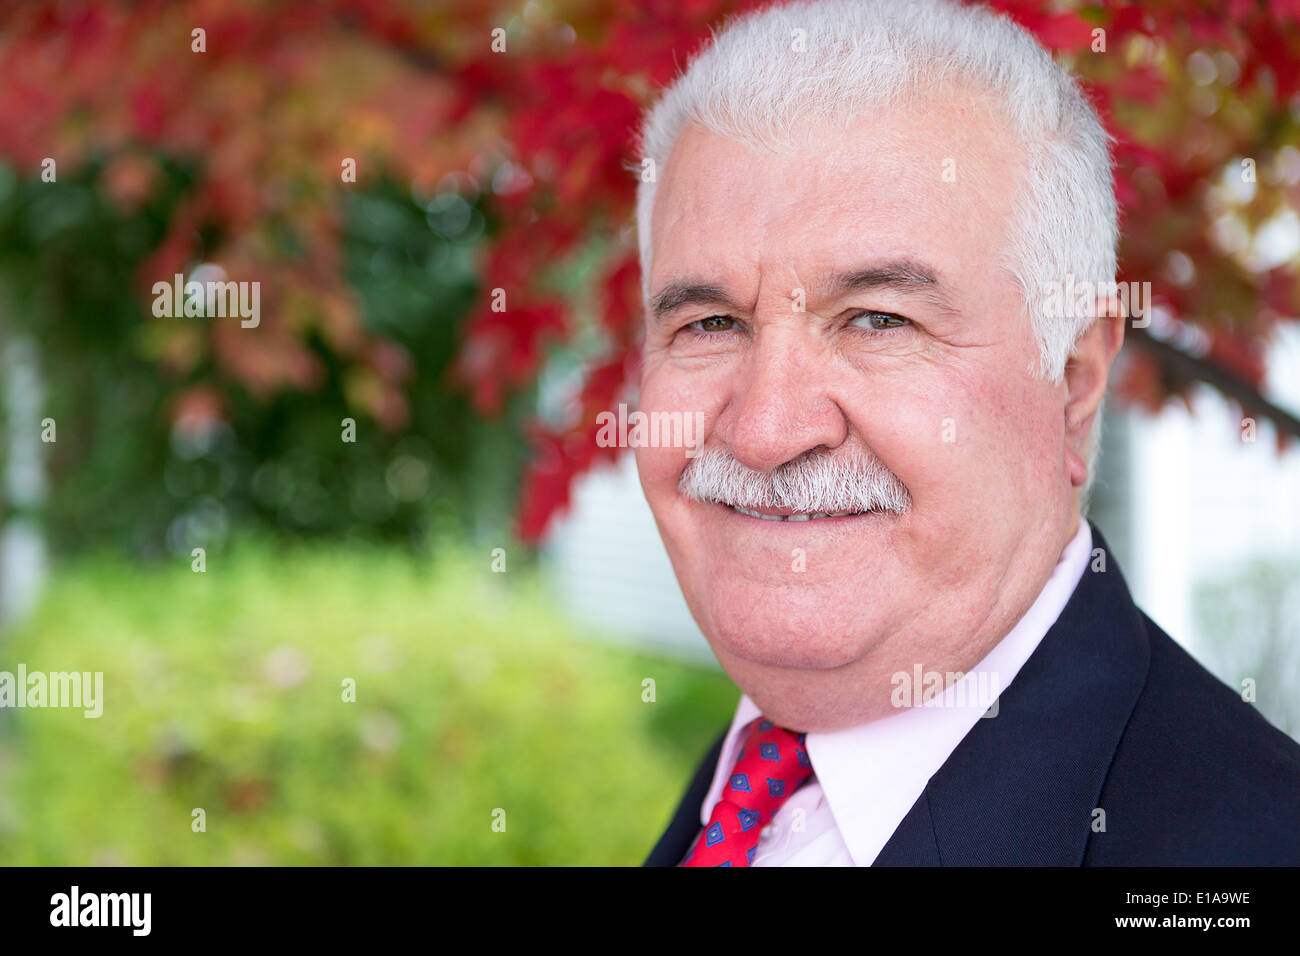 Pelo Blanco empresario senior mira alrededor del tiempo de caída bajo el árbol con hojas rojas detrás de él Foto de stock